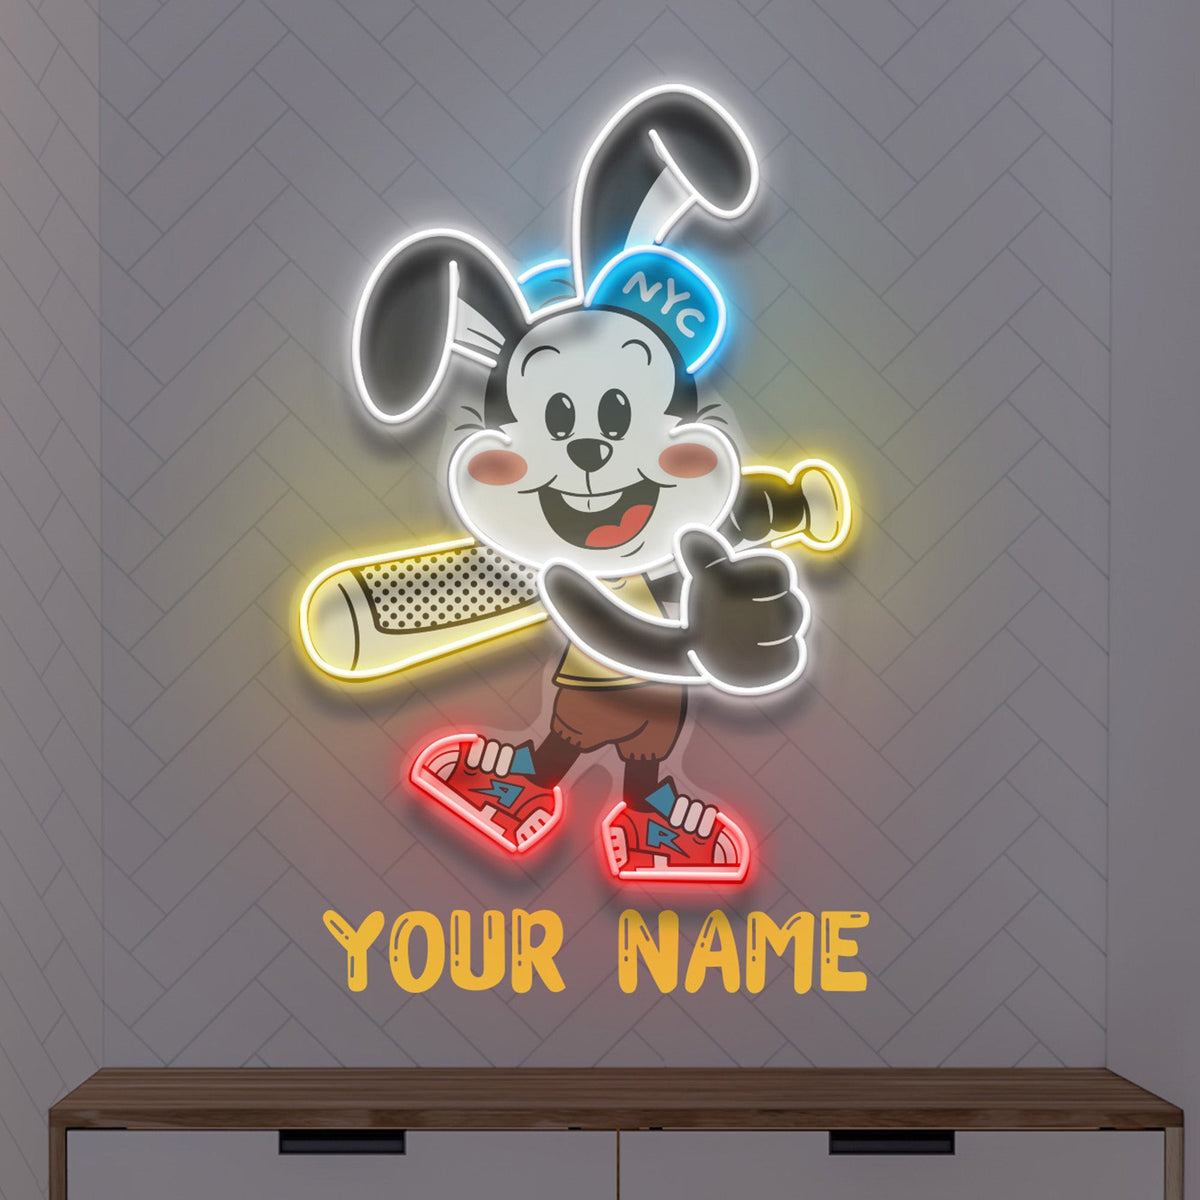 Custom Name Rabbit Playing Baseball Artwork Led Neon Sign Light